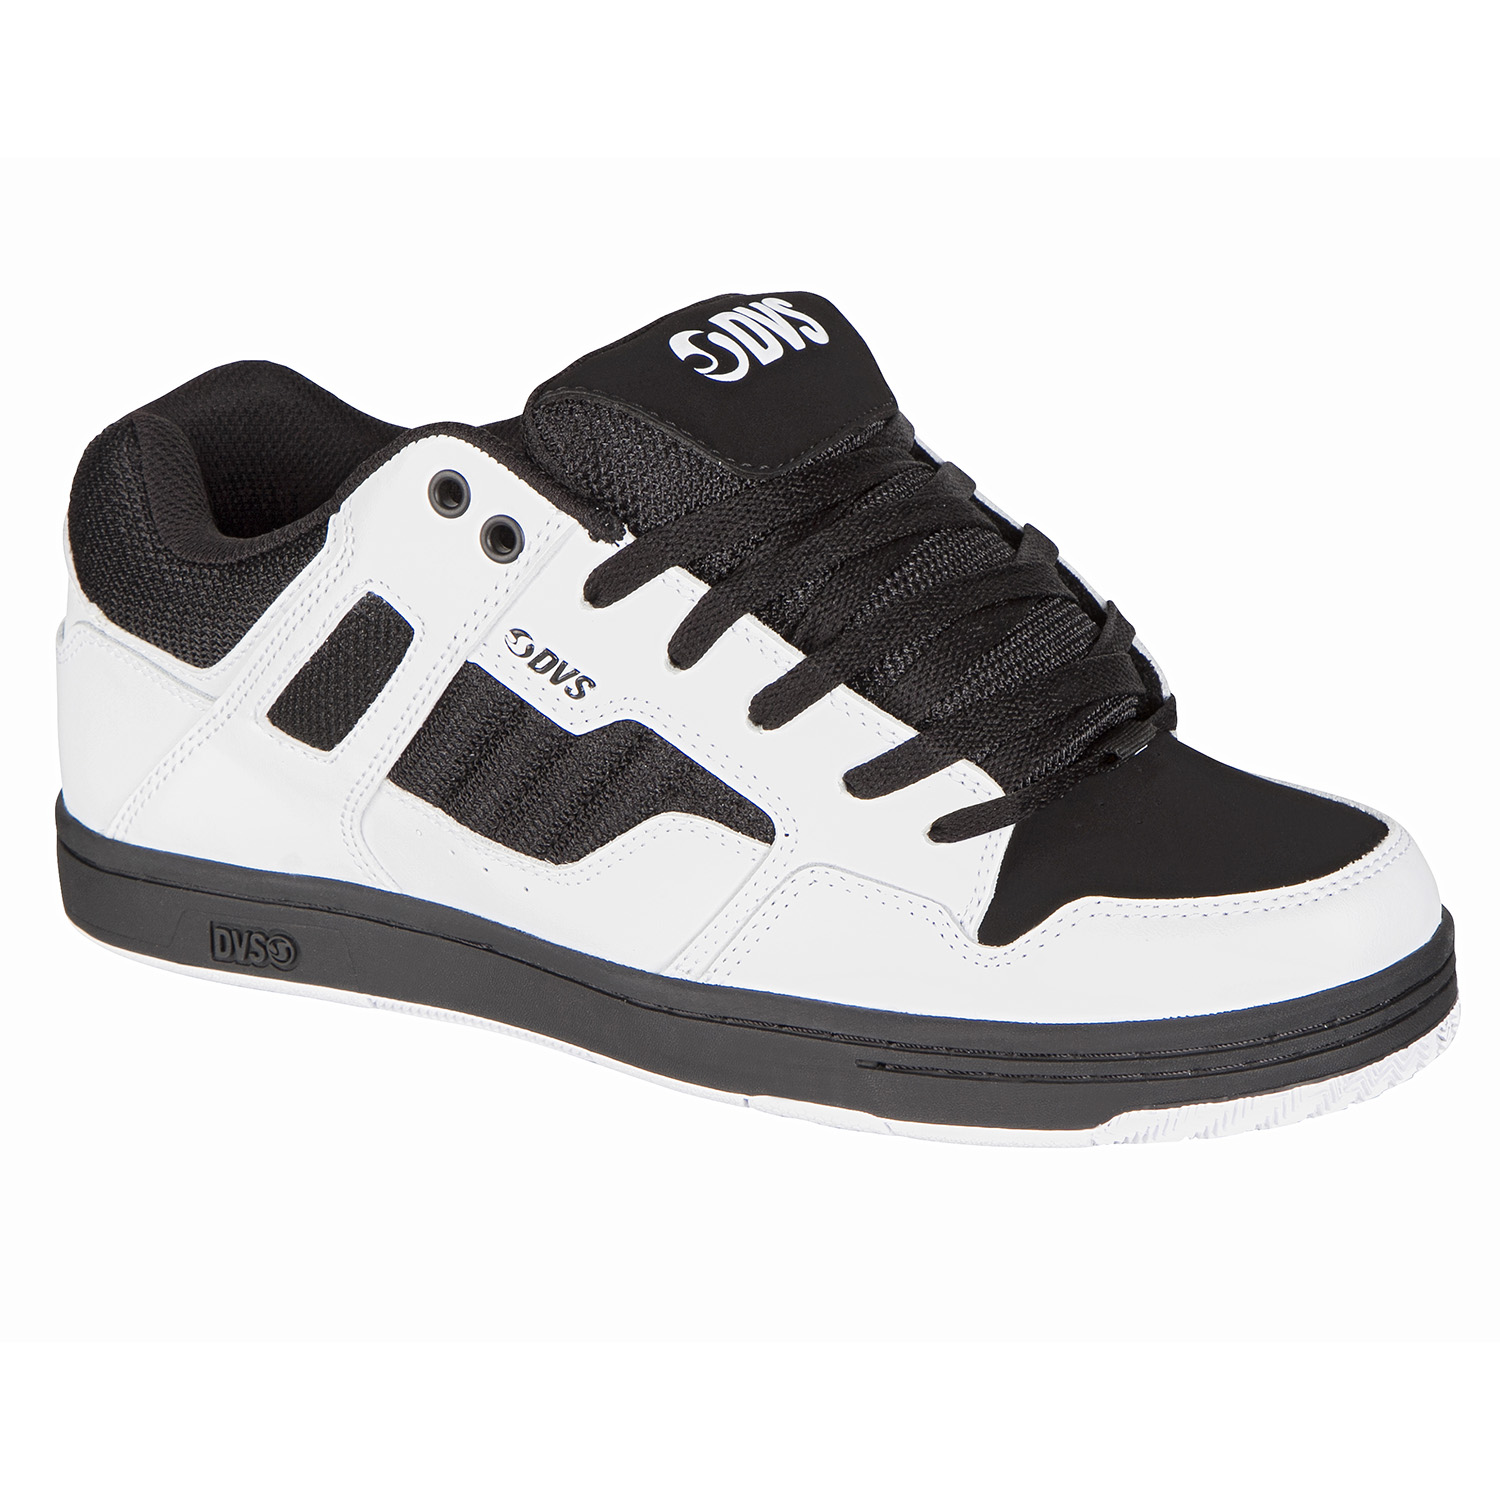 DVS Schuhe Enduro 125 Weiß/Schwarz Leather